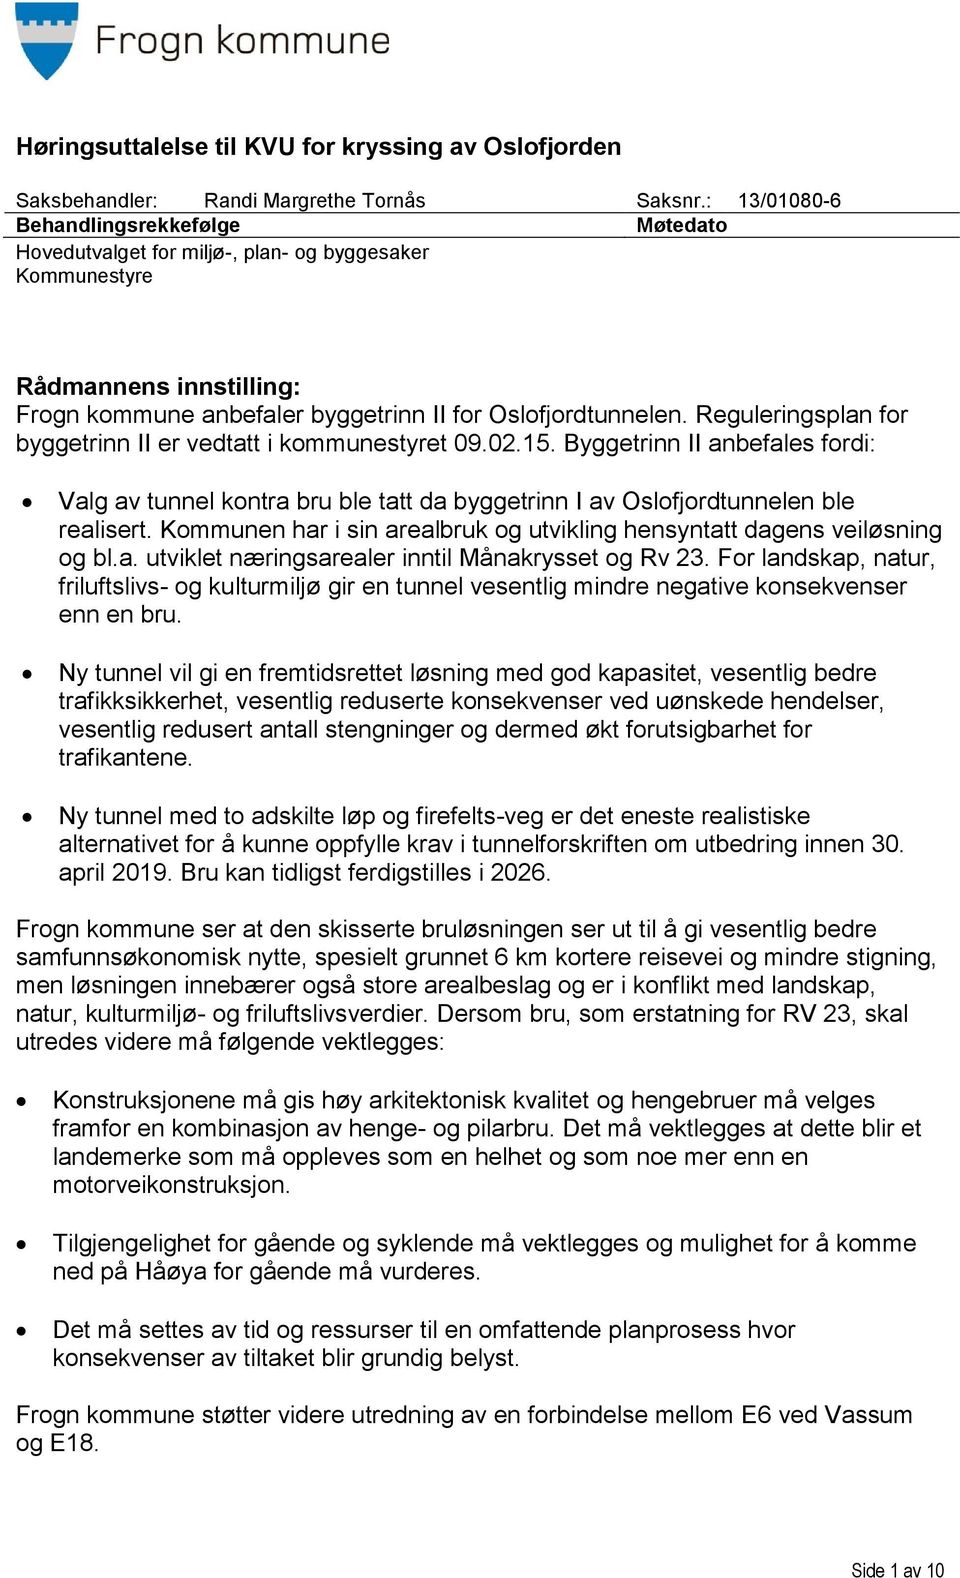 Reguleringsplan for byggetrinn II er vedtatt i kommunestyret 09.02.15. Byggetrinn II anbefales fordi: Valg av tunnel kontra bru ble tatt da byggetrinn I av Oslofjordtunnelen ble realisert.